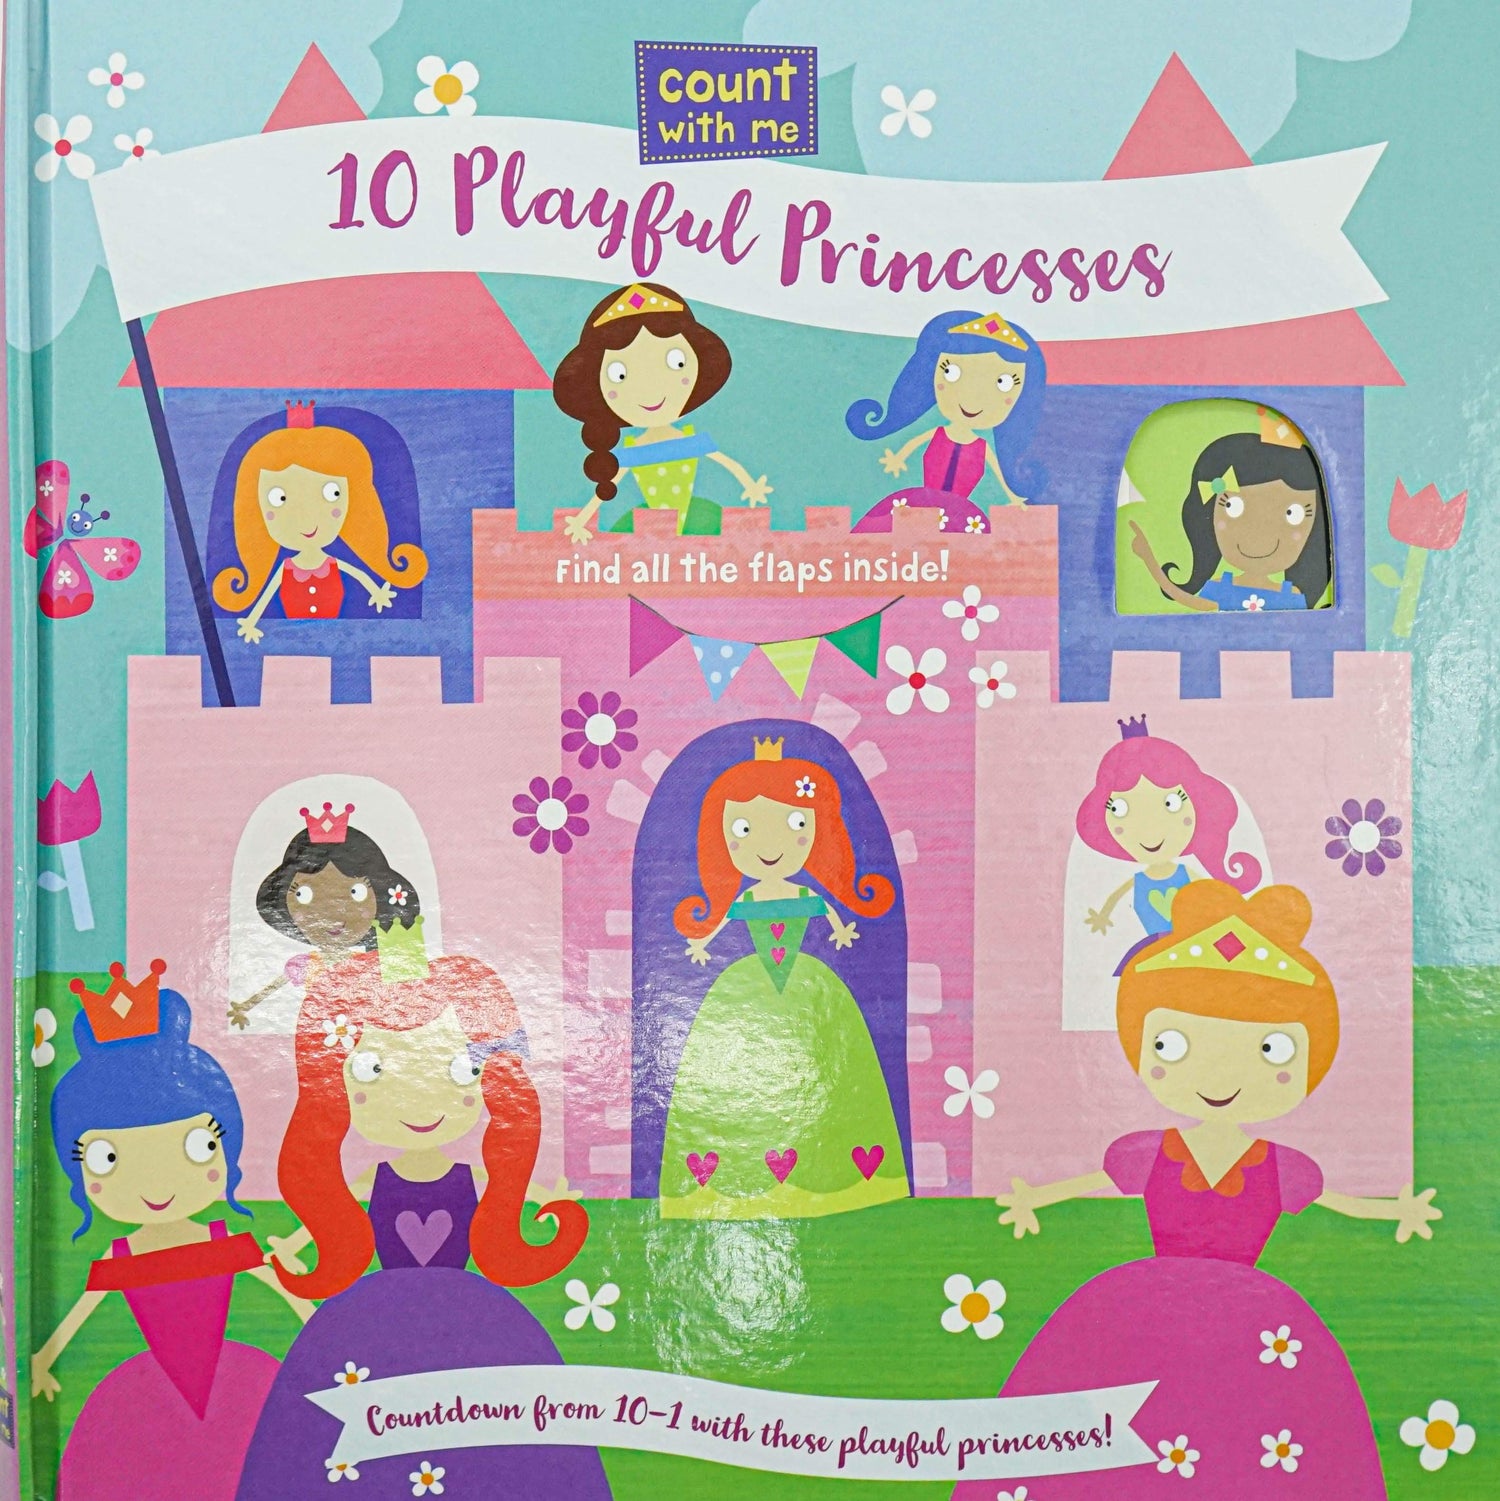 10 Playful Princesses